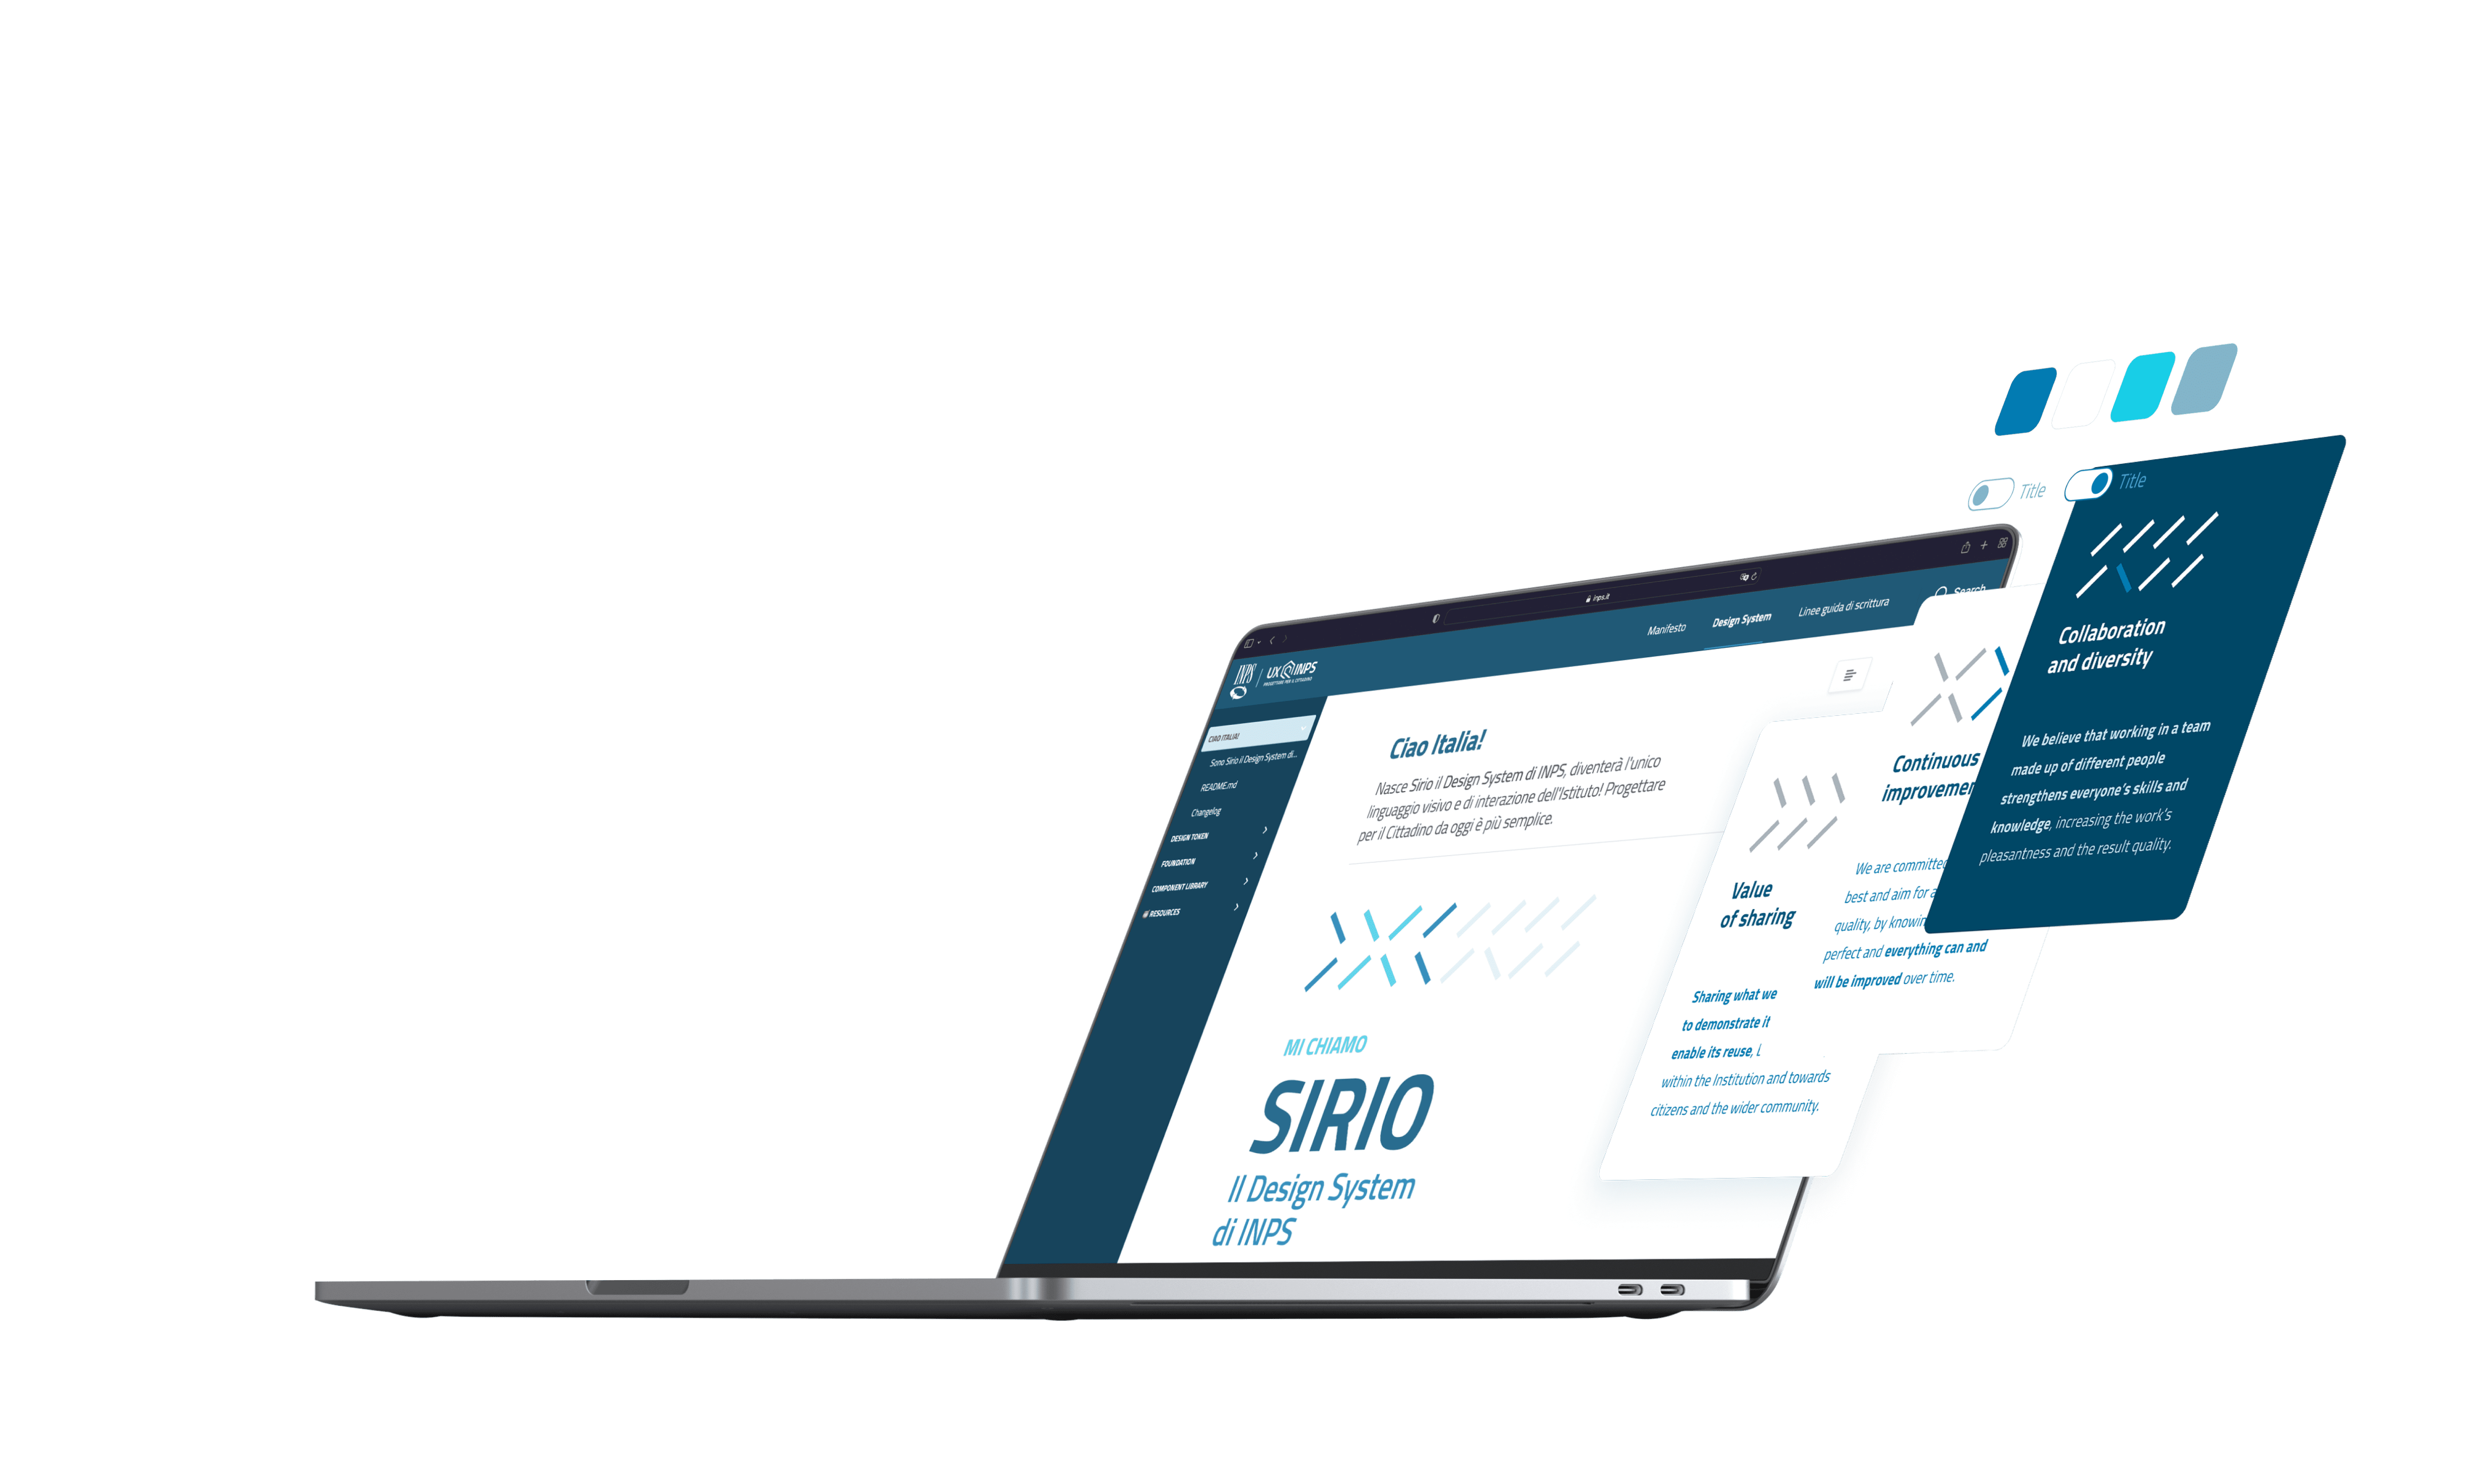 Vista dell'homepage di Sirio e di altri vari componenti del design system in un laptop